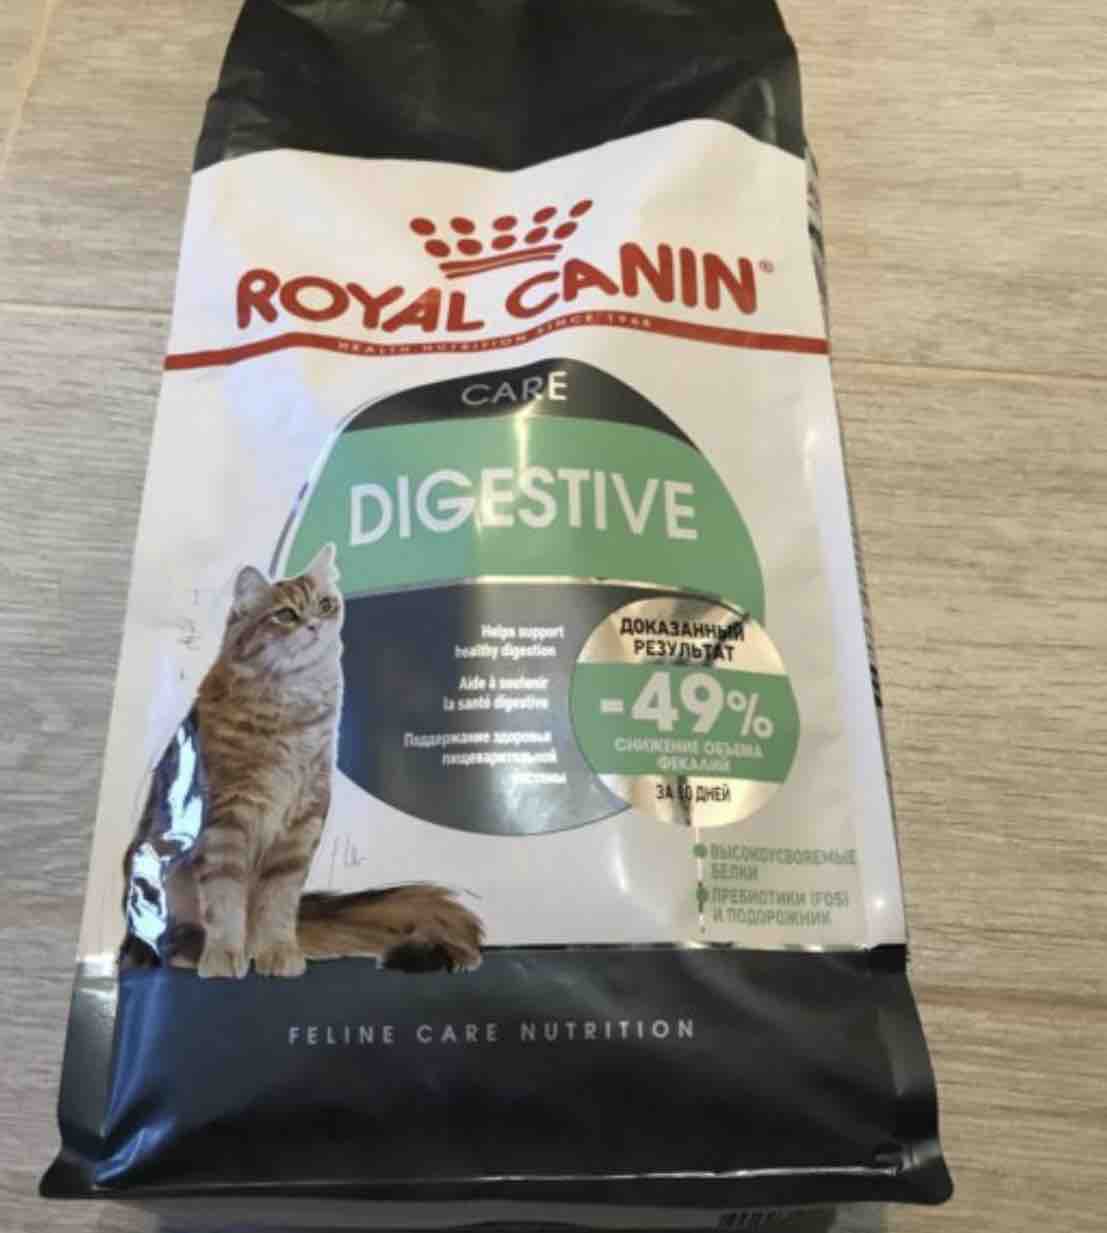 Royal canin digestive для кошек. Royal Canin корм сухой Digestive Care для кошек. Сухой корм для кошек Royal Canin Digestive Care при чувствительном пищеварении. Роял дигестив для кошек. RC для кошек Digestive.